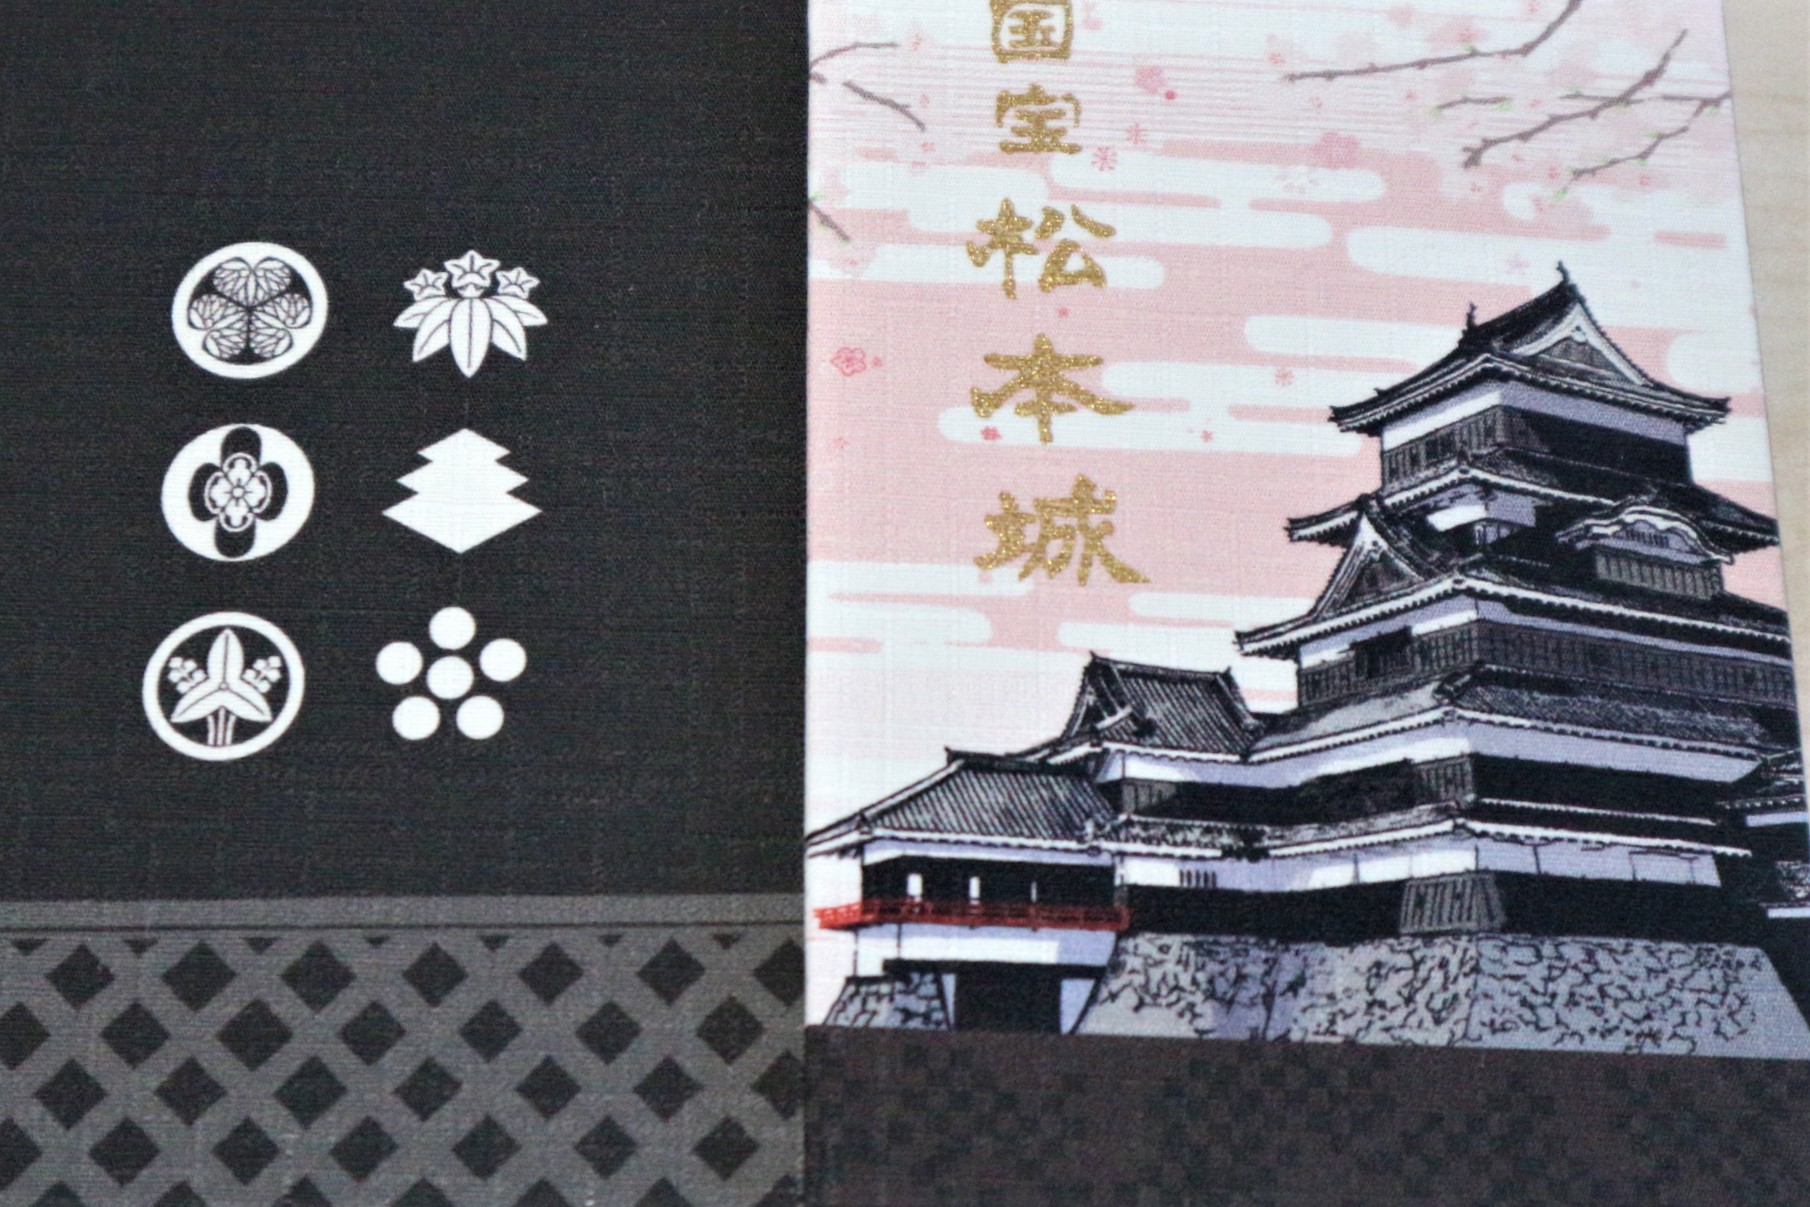 国宝松本城「天守登閣記念御朱印符」もらいました。はしごチケット使え 